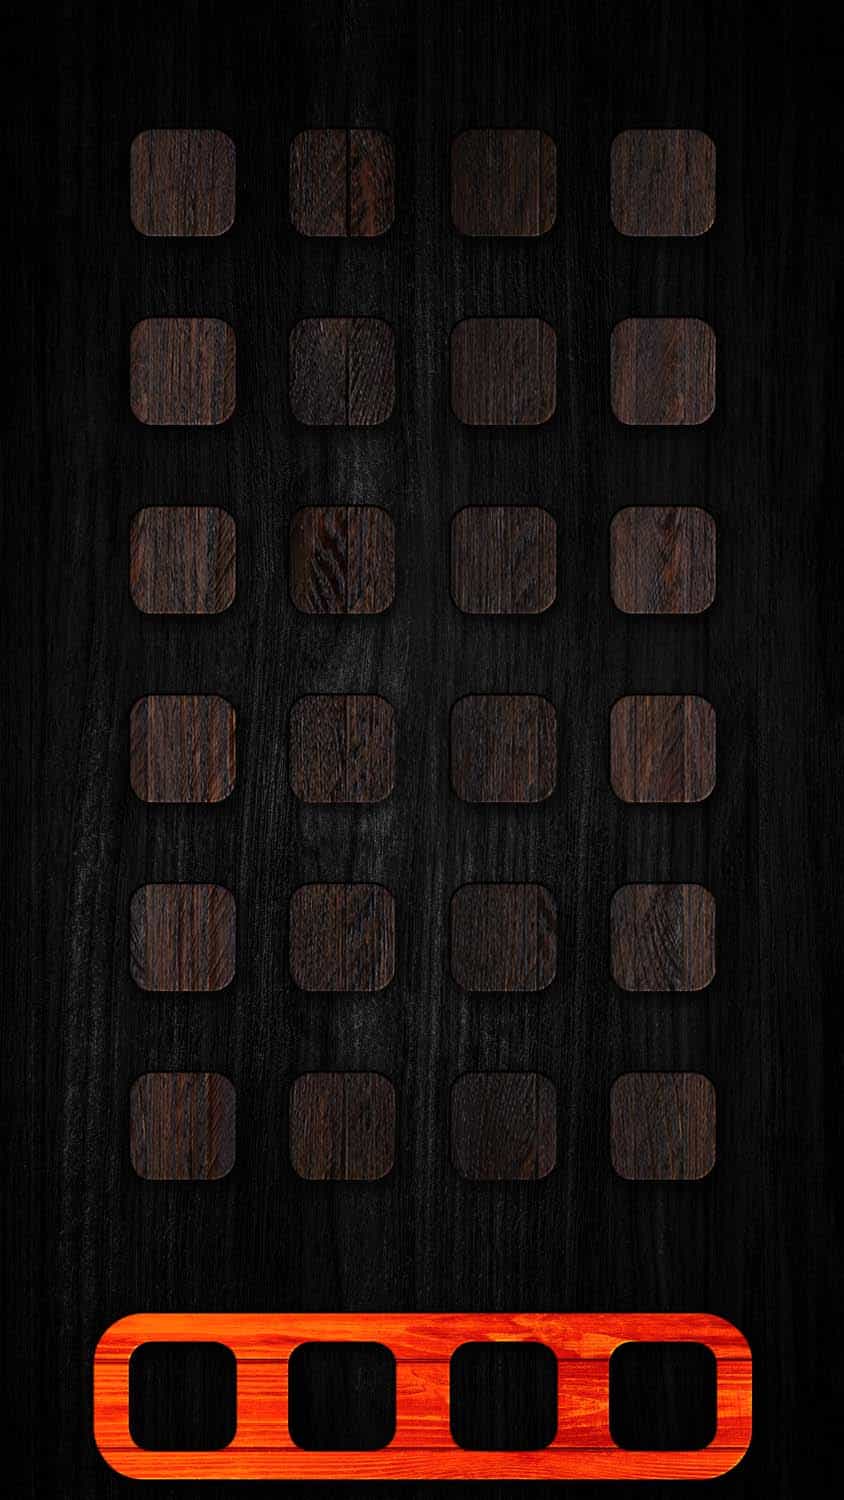 iOS Wooden App Dock iPhone Wallpaper HD